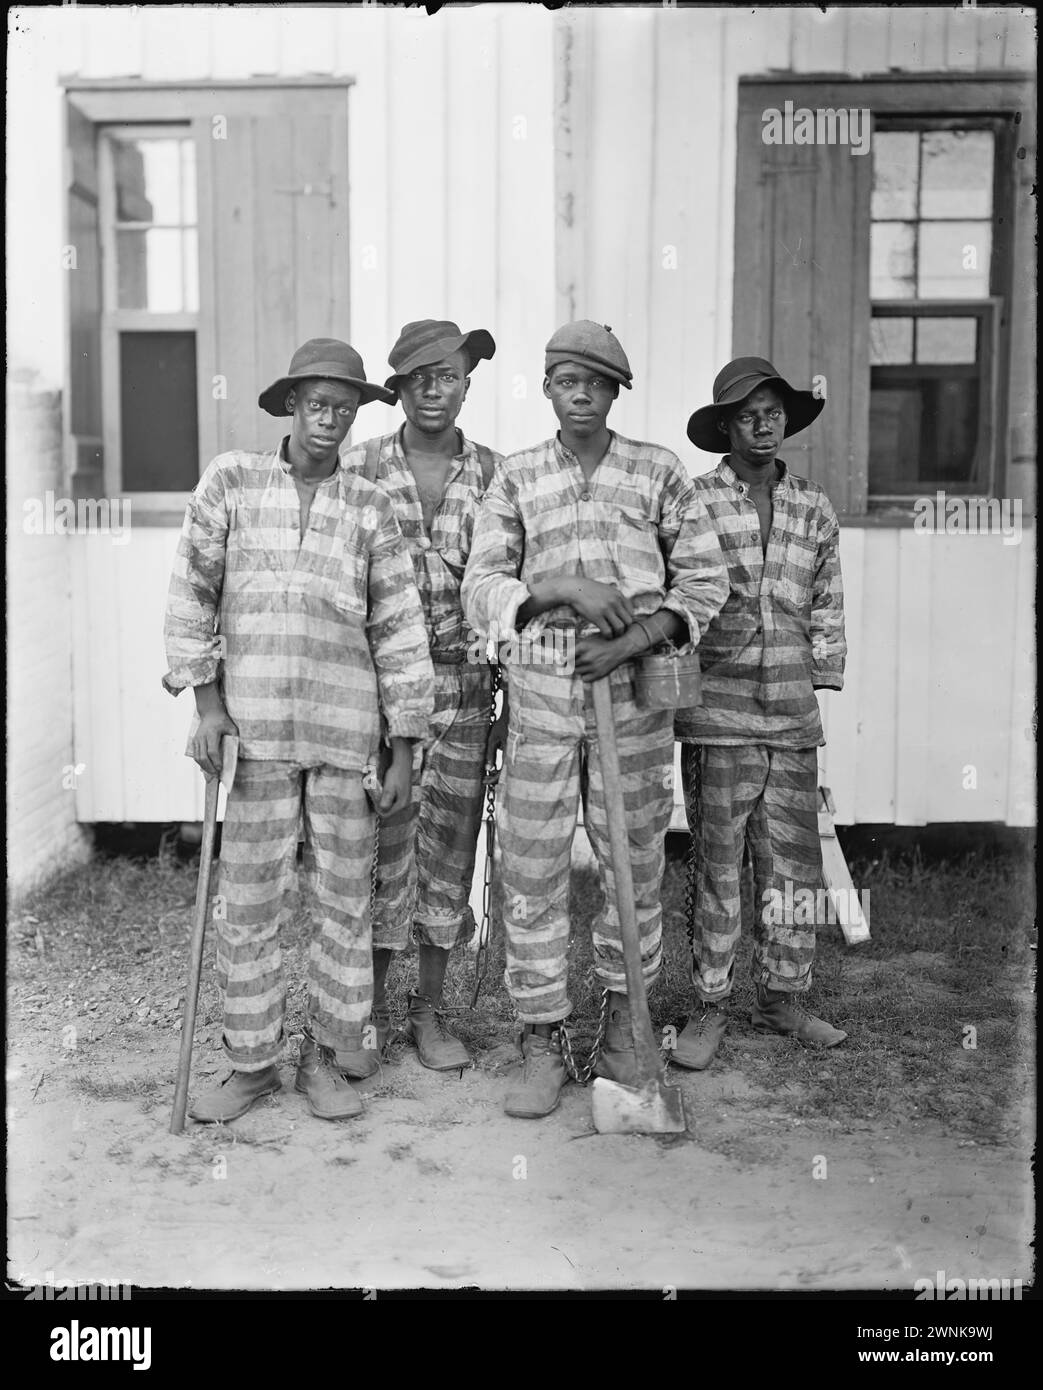 Die Sträflinge aus Florida sind an Harvest Timber verpachtet. Eine Kettenbande junger afroamerikanischer Häftlinge im Süden der Vereinigten Staaten, um 1903. Eine gängige Praxis im Süden der USA, waren Gefangene aneinander gekettet, um niederträchtige oder körperlich herausfordernde Arbeit als eine Form der Bestrafung zu verrichten. Kettenbanden erlaubten Gefangenen, außerhalb der Strafvollzugsanstalten in der Öffentlichkeit zu arbeiten, um den Arbeitsbedarf bei staatlichen Projekten wie Eisenbahn und Straße zu befriedigen Stockfoto